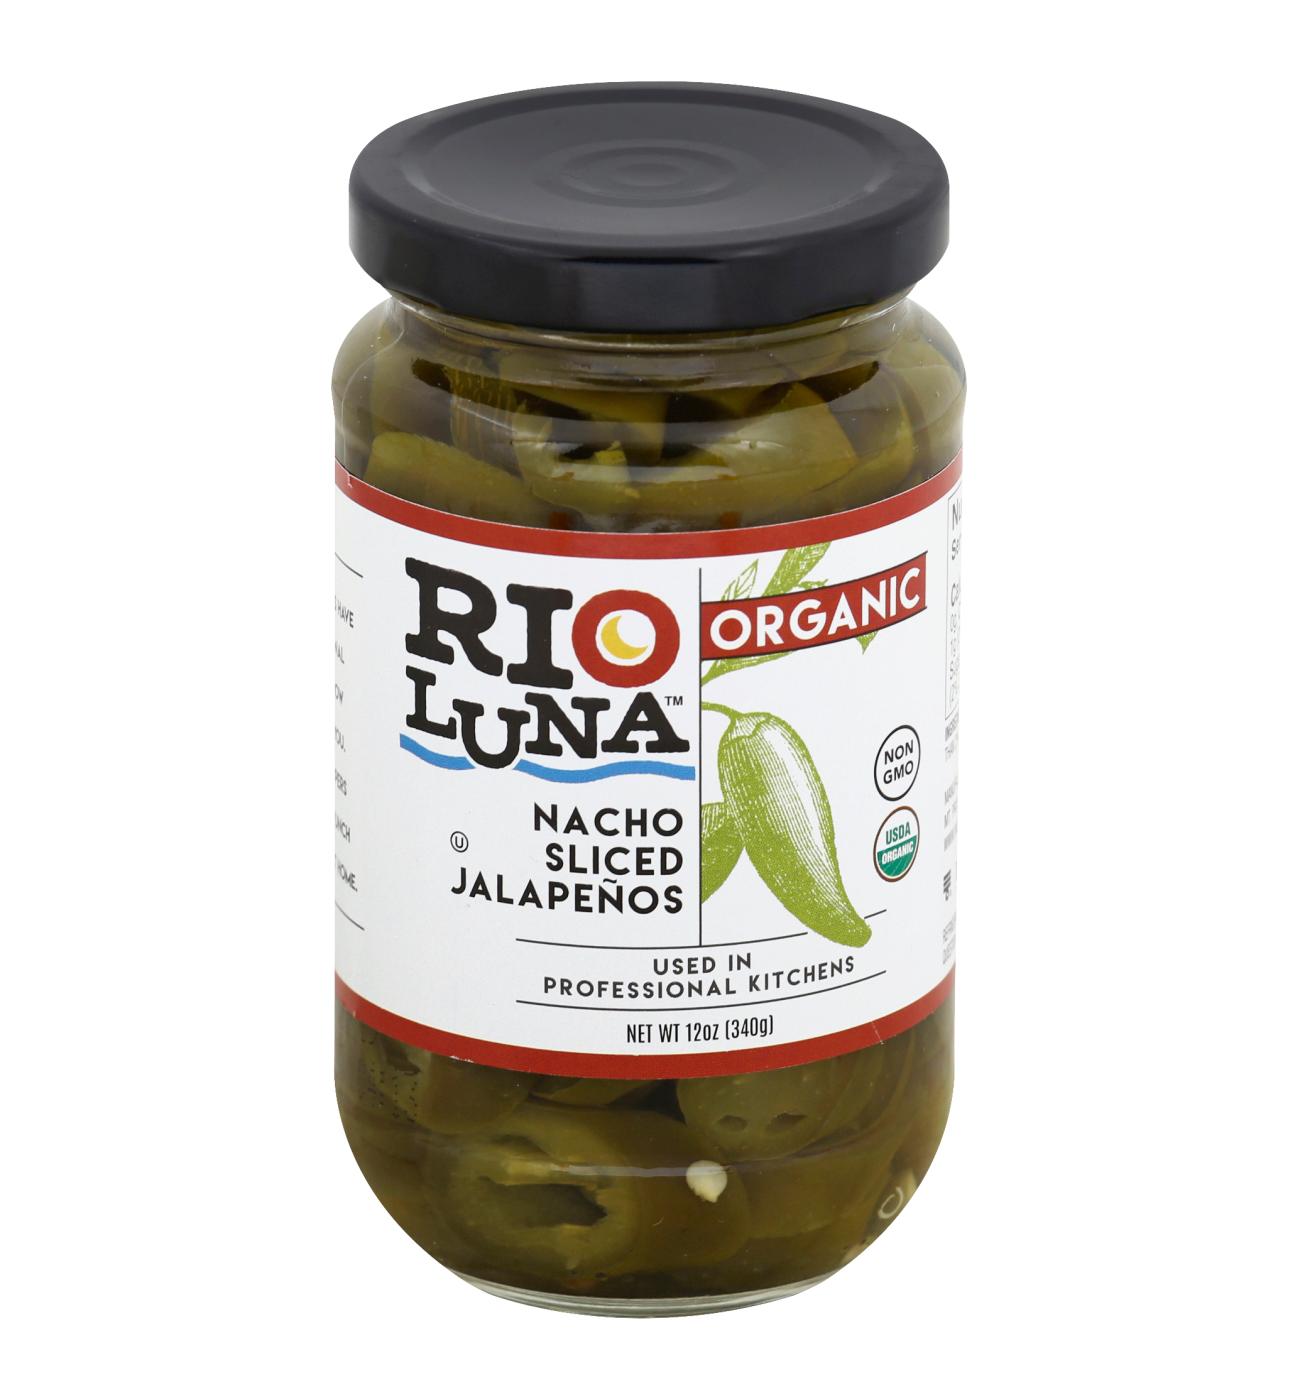 Rio Luna Organic Nacho Sliced Jalapenos; image 1 of 5